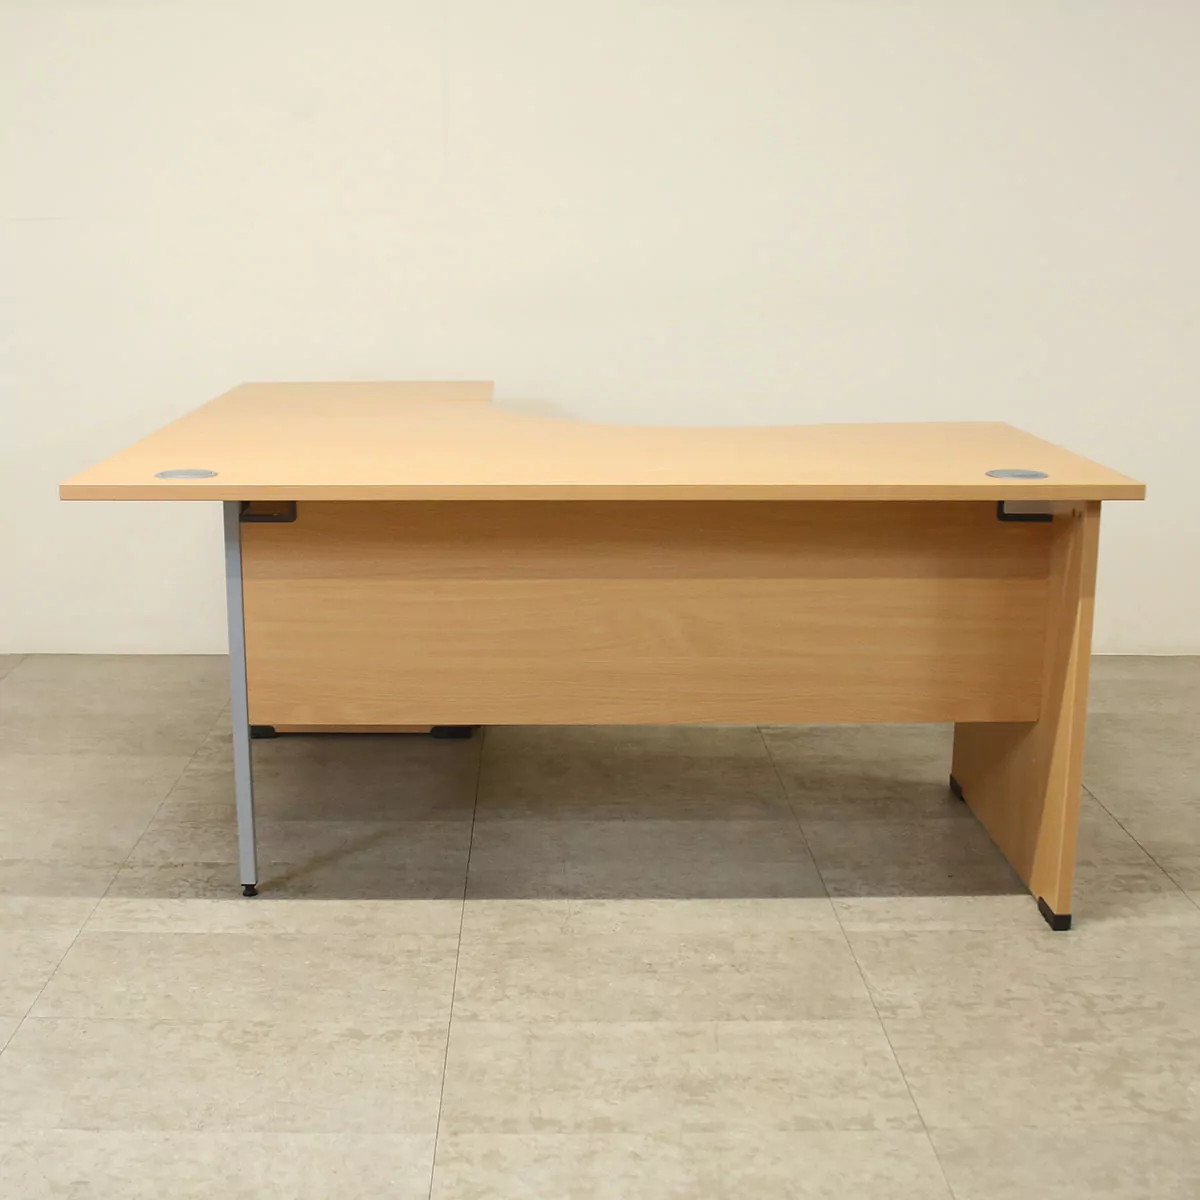 Senator Beech 1600mm R/H Crescent Desk with D/H Pedestal